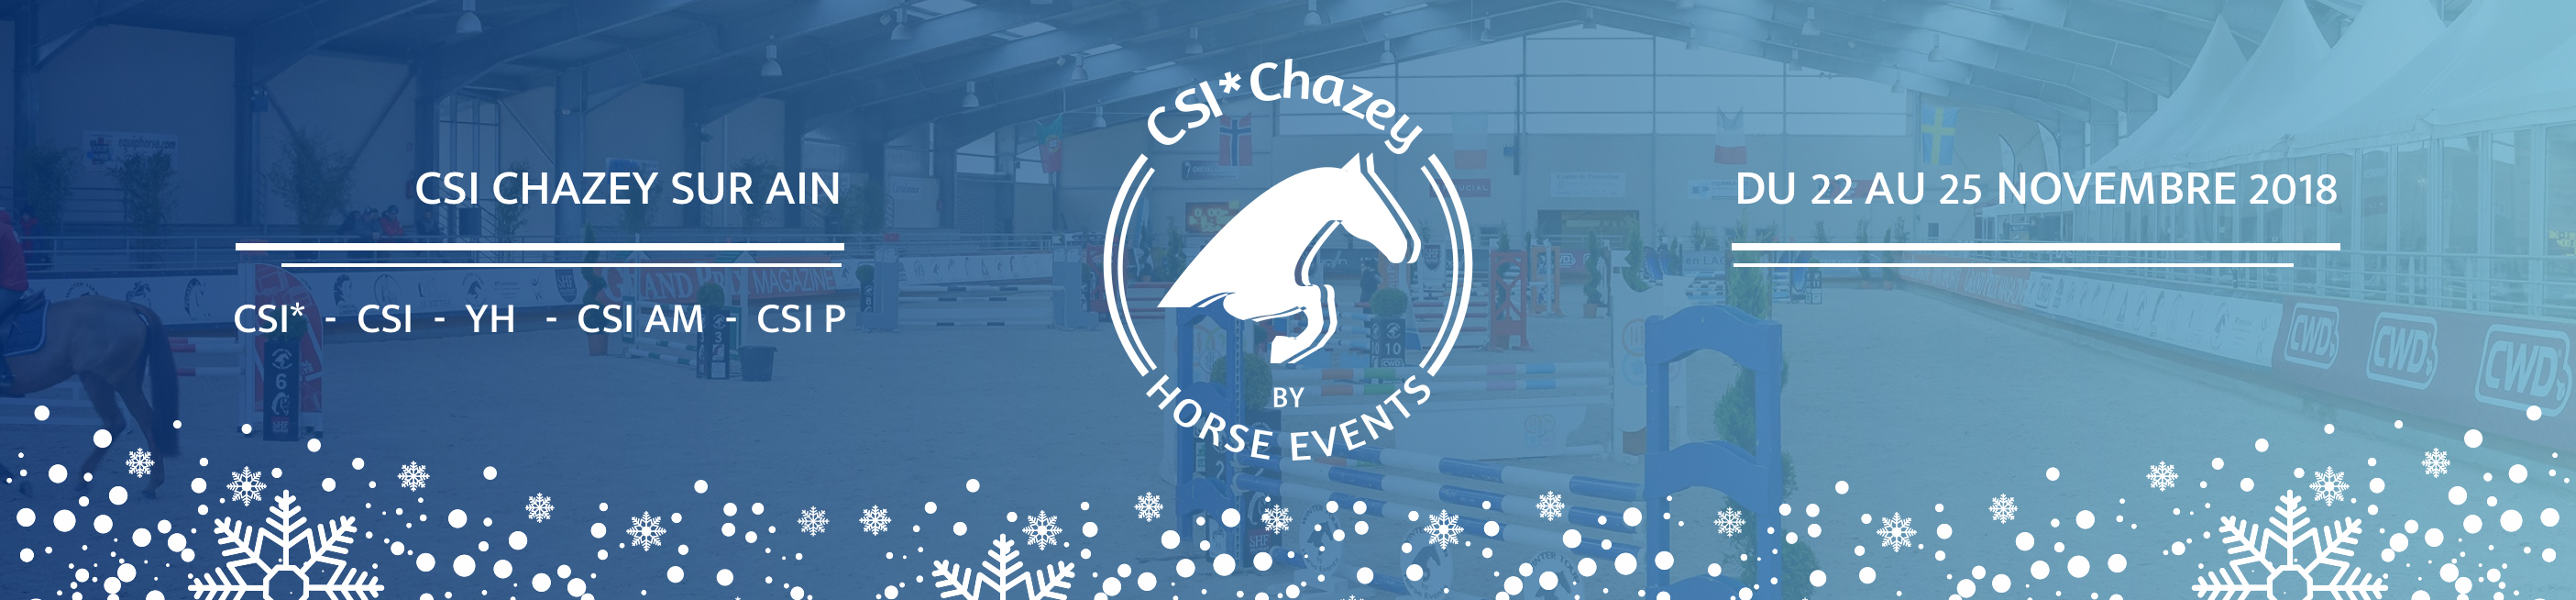 Winter Tour by Horse Events - CSI1* - Chazey-sur-Ain / 22/11/2018 - 25/11/2018